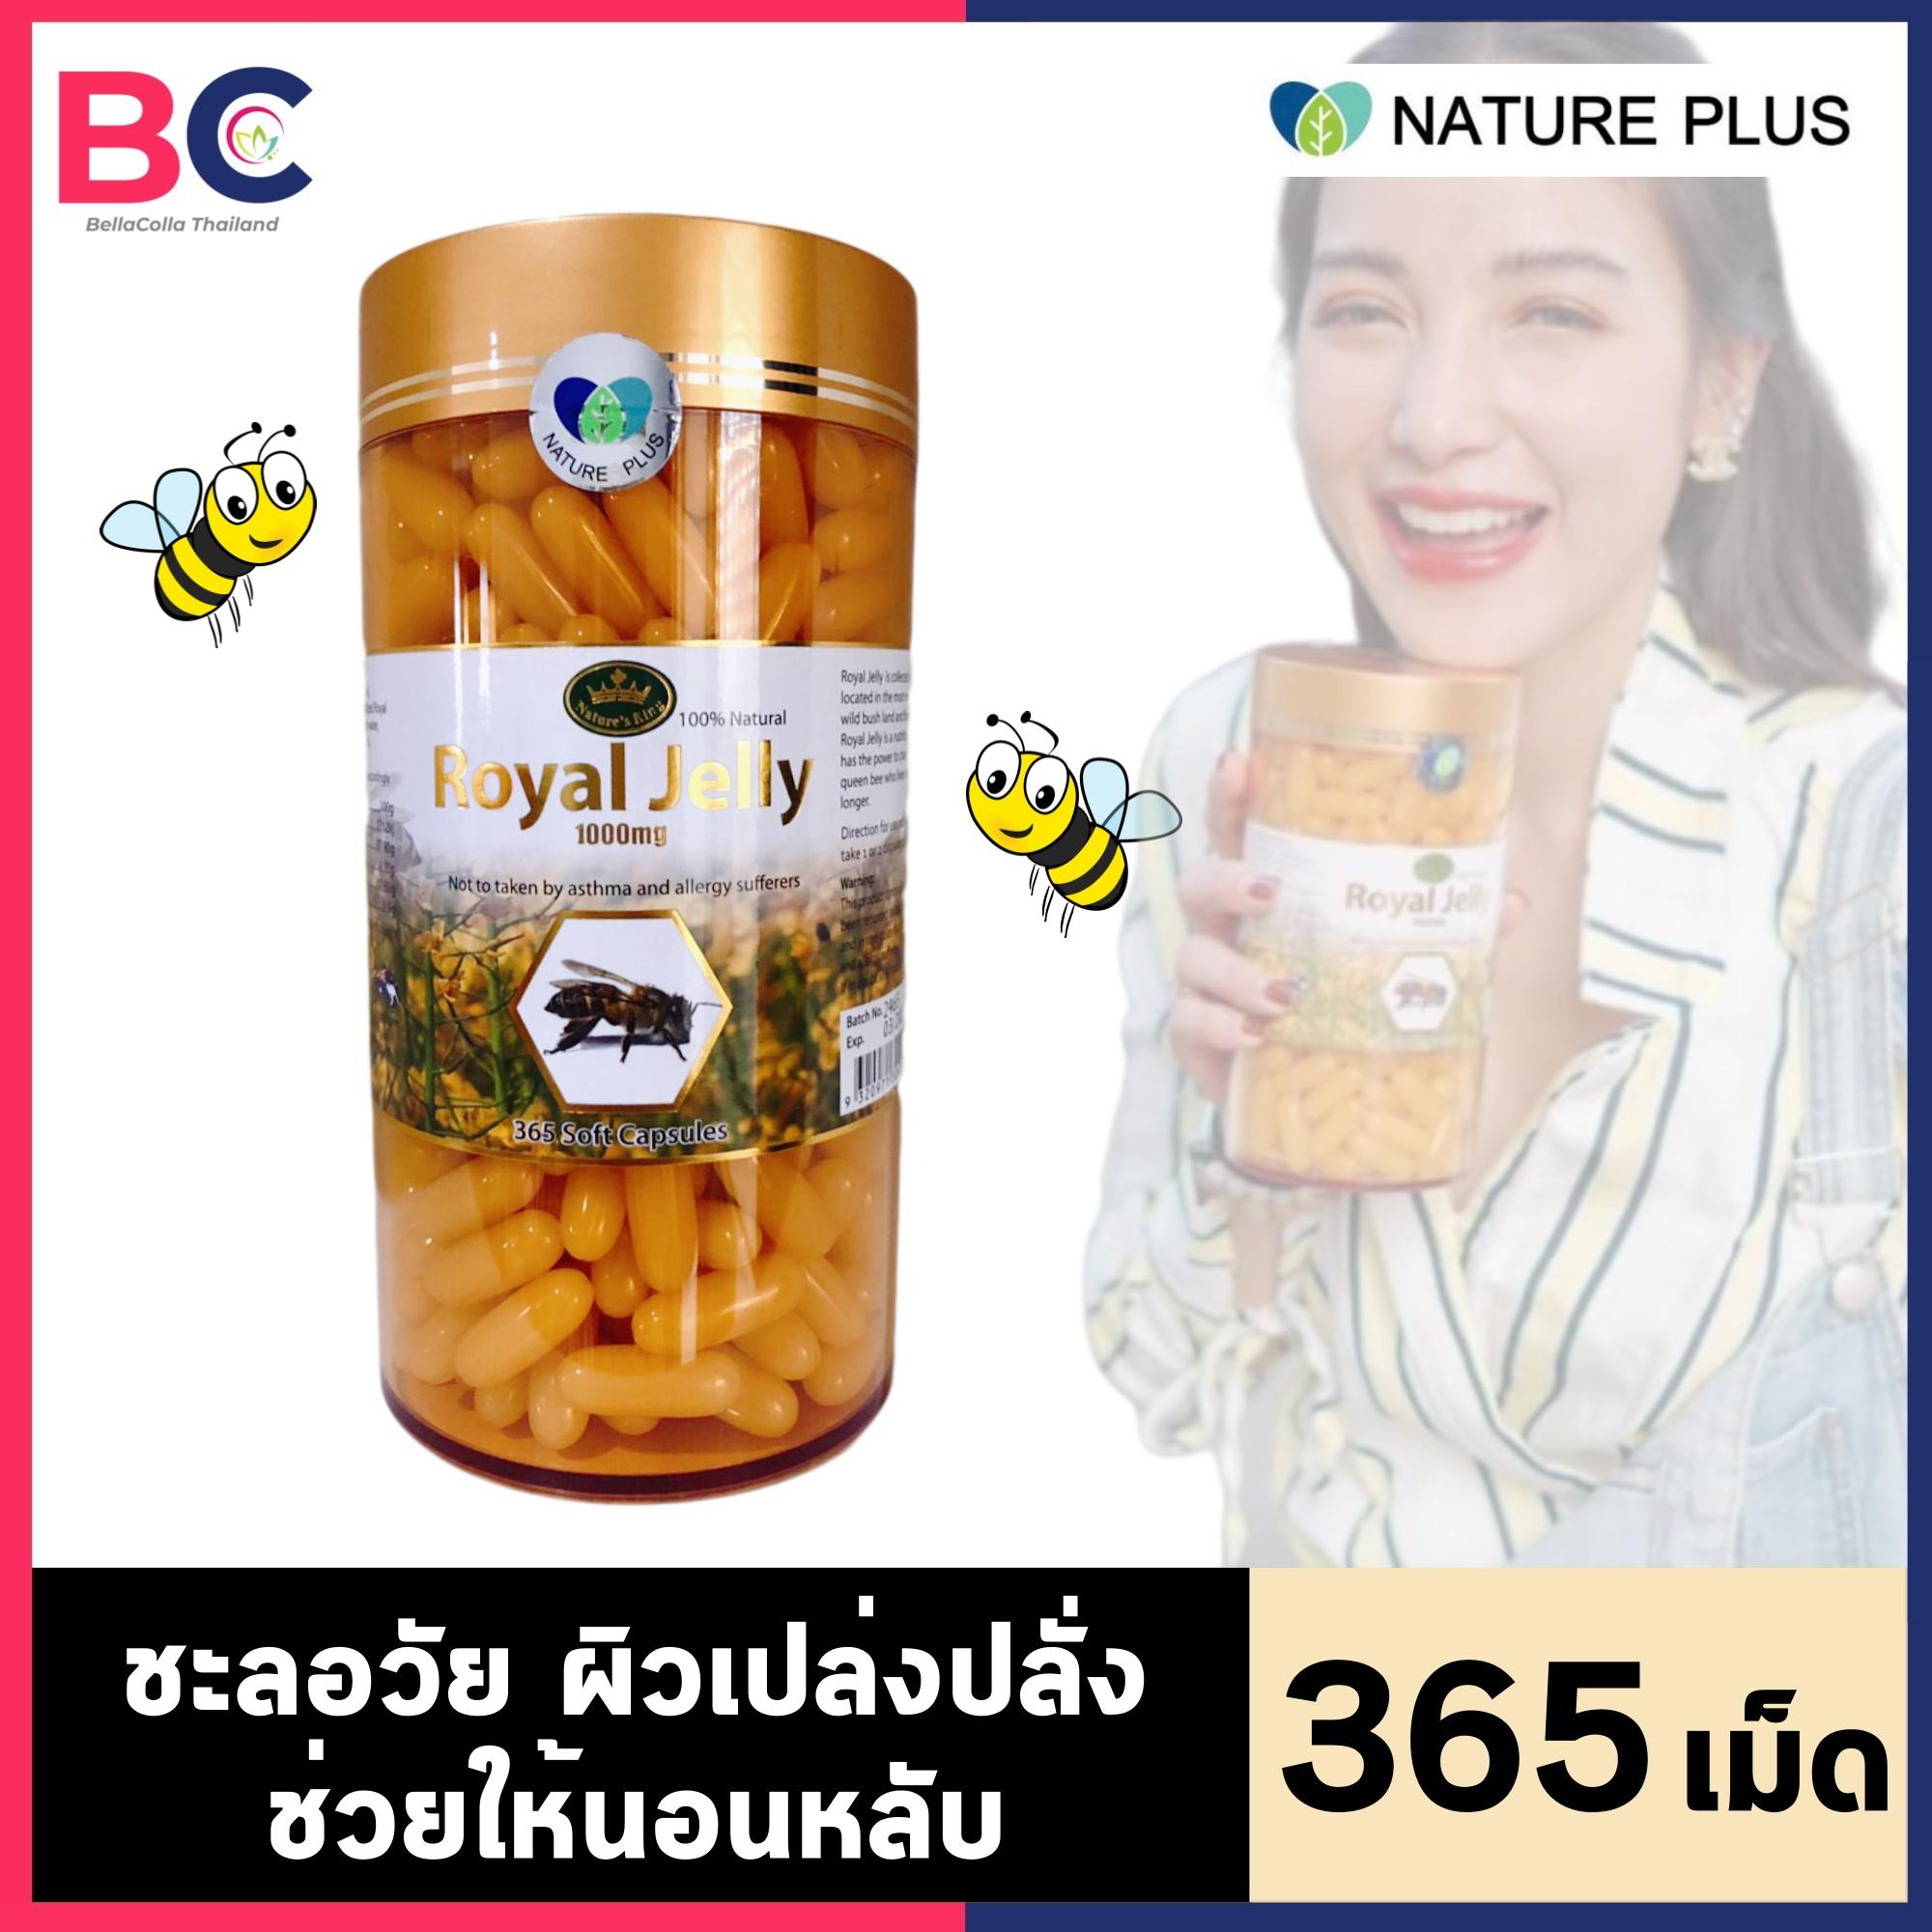 นมผึ้ง royal jelly 1000 มิลลิกรัม [1 ขวด] [365 เม็ด] [อย ไทย] Nature King Royal jelly BC สุขภาพ